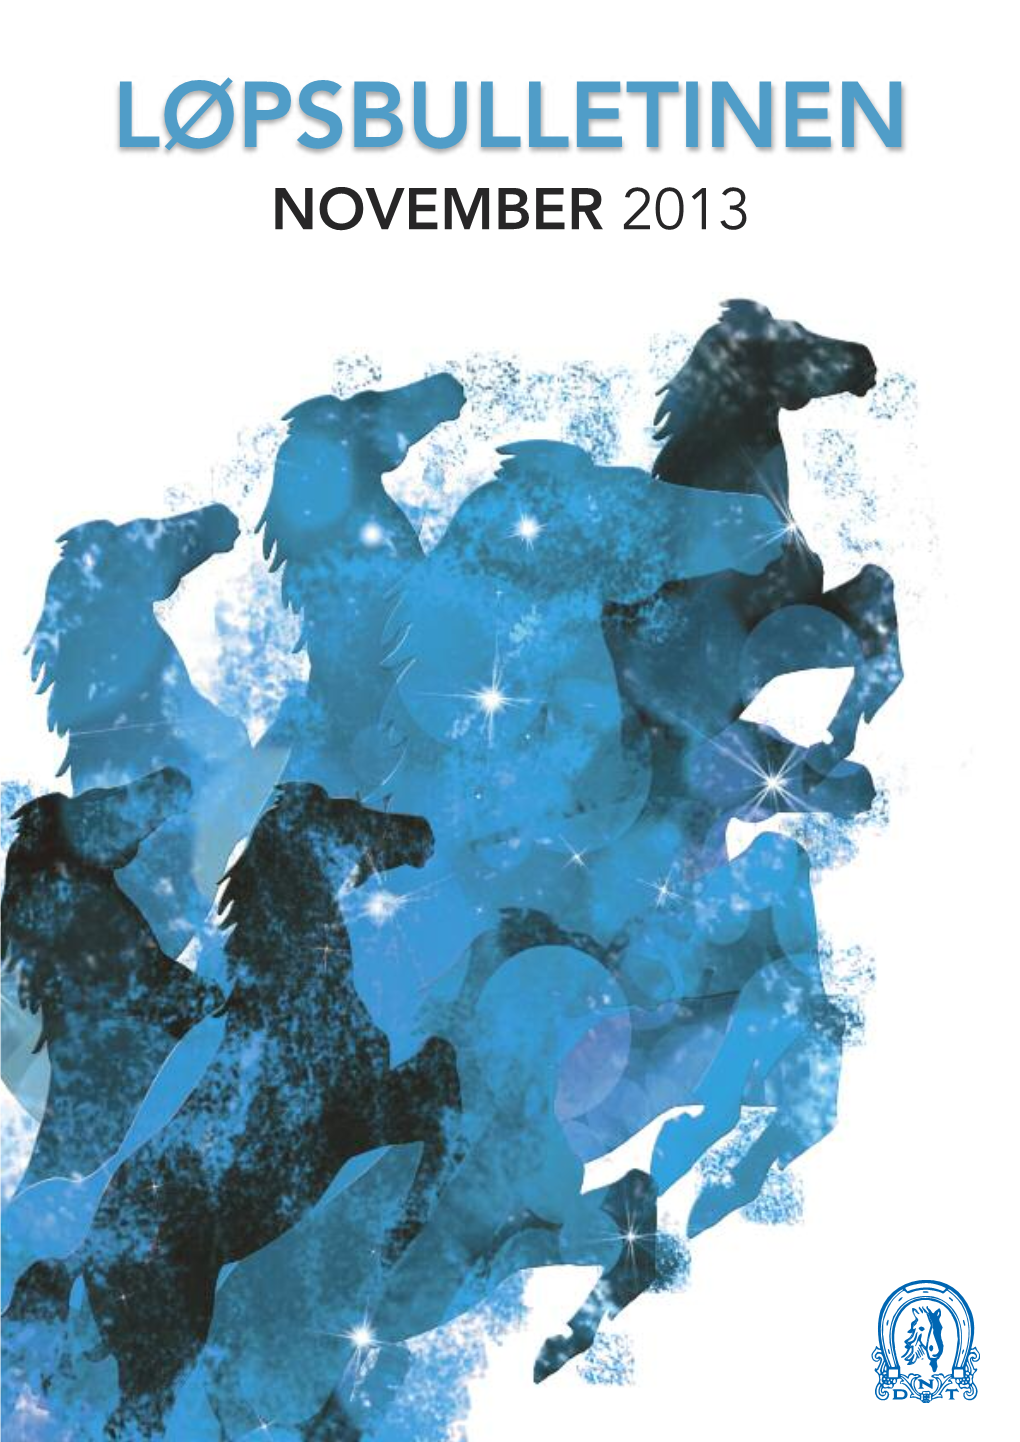 Løpsbulletinen for November 2013